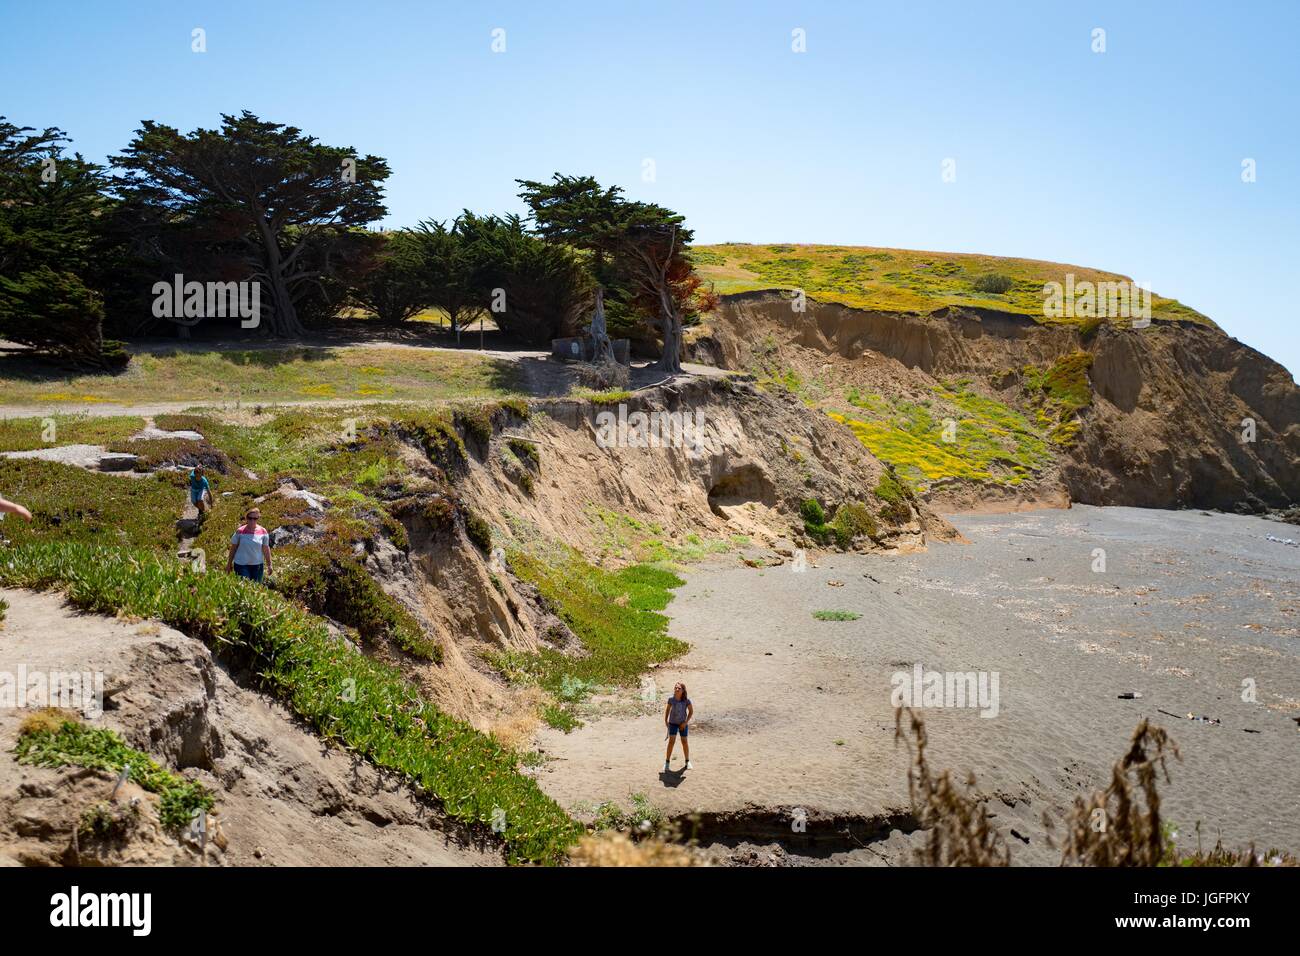 Eine Familie erkundet den Strand von Mori Point, Teil der Golden Gate National Recreation Area in Pacifica, Kalifornien, 20. Juni 2017. Stockfoto